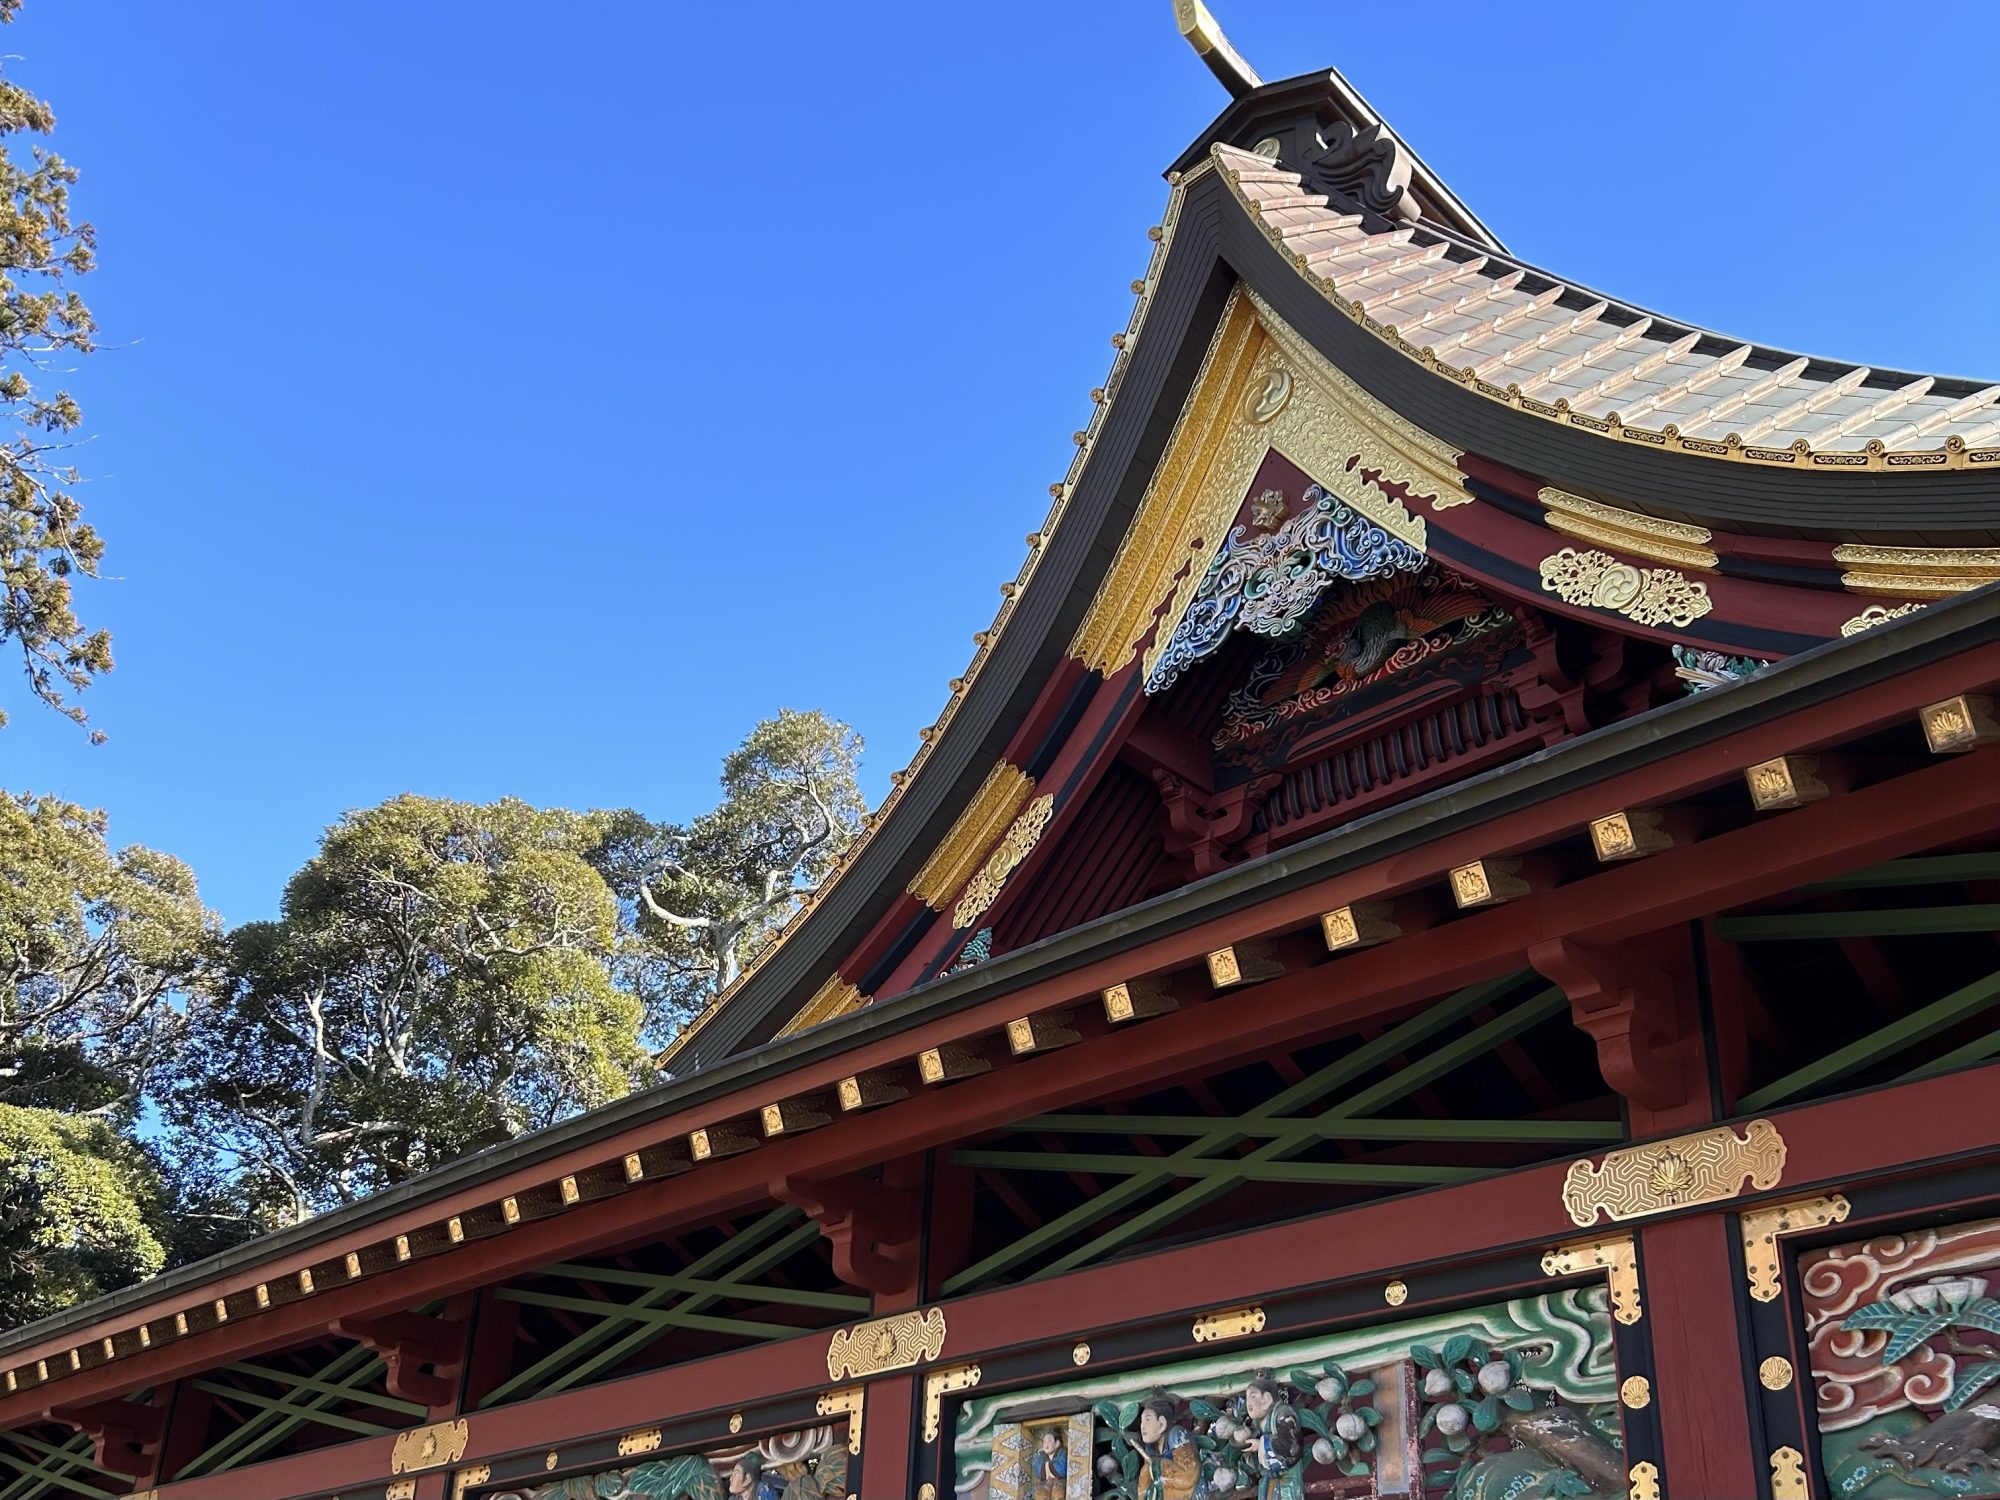 日本で唯一の夢叶え神社 | 柏木瑤子、の道標 無料占い